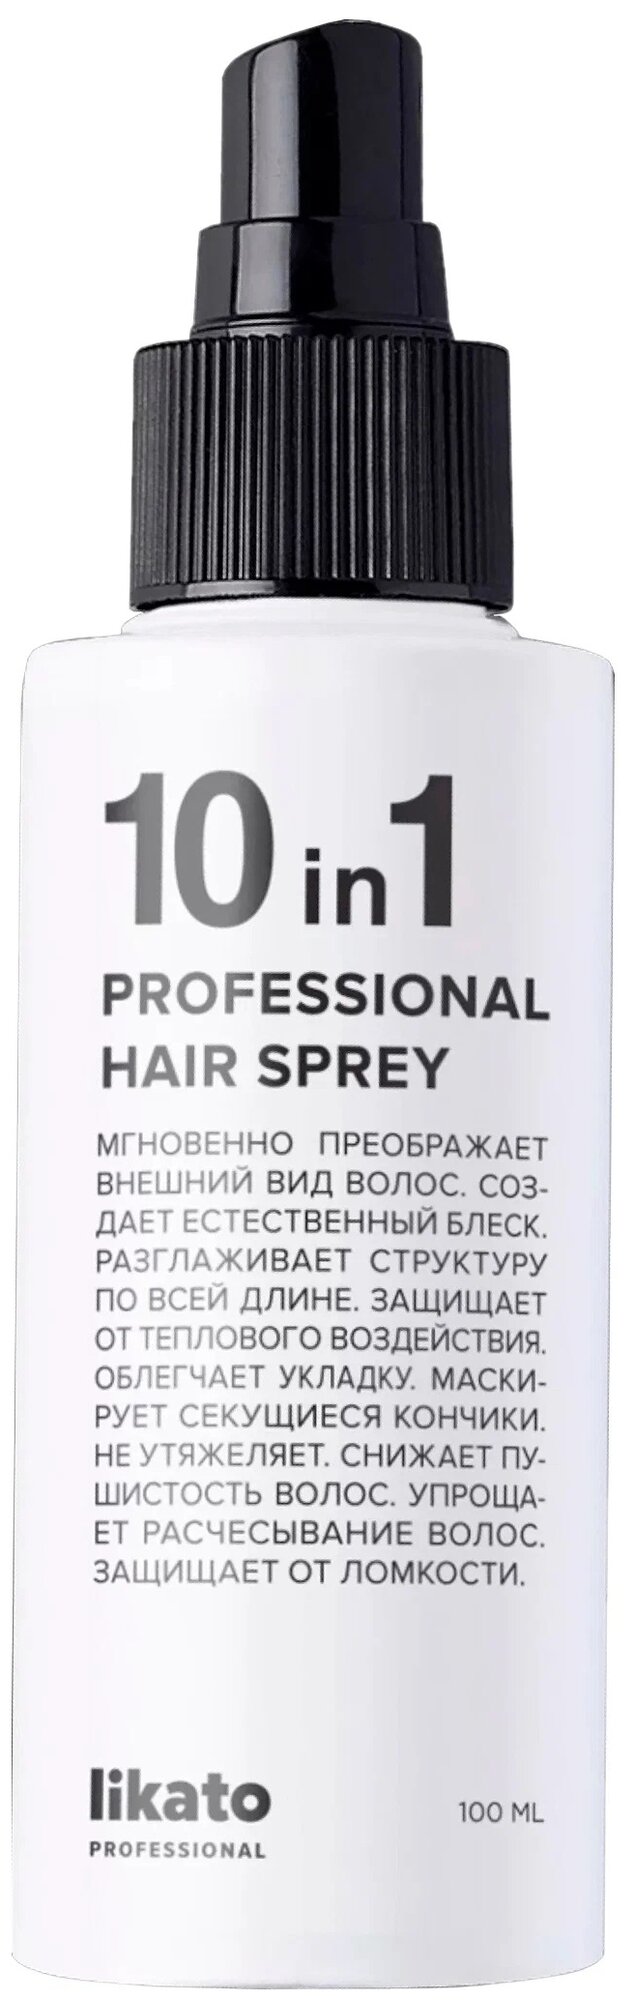 Likato Профессиональный спрей для мгновенного восстановления волос 10-в-1, 100 мл (Likato, ) - фото №1